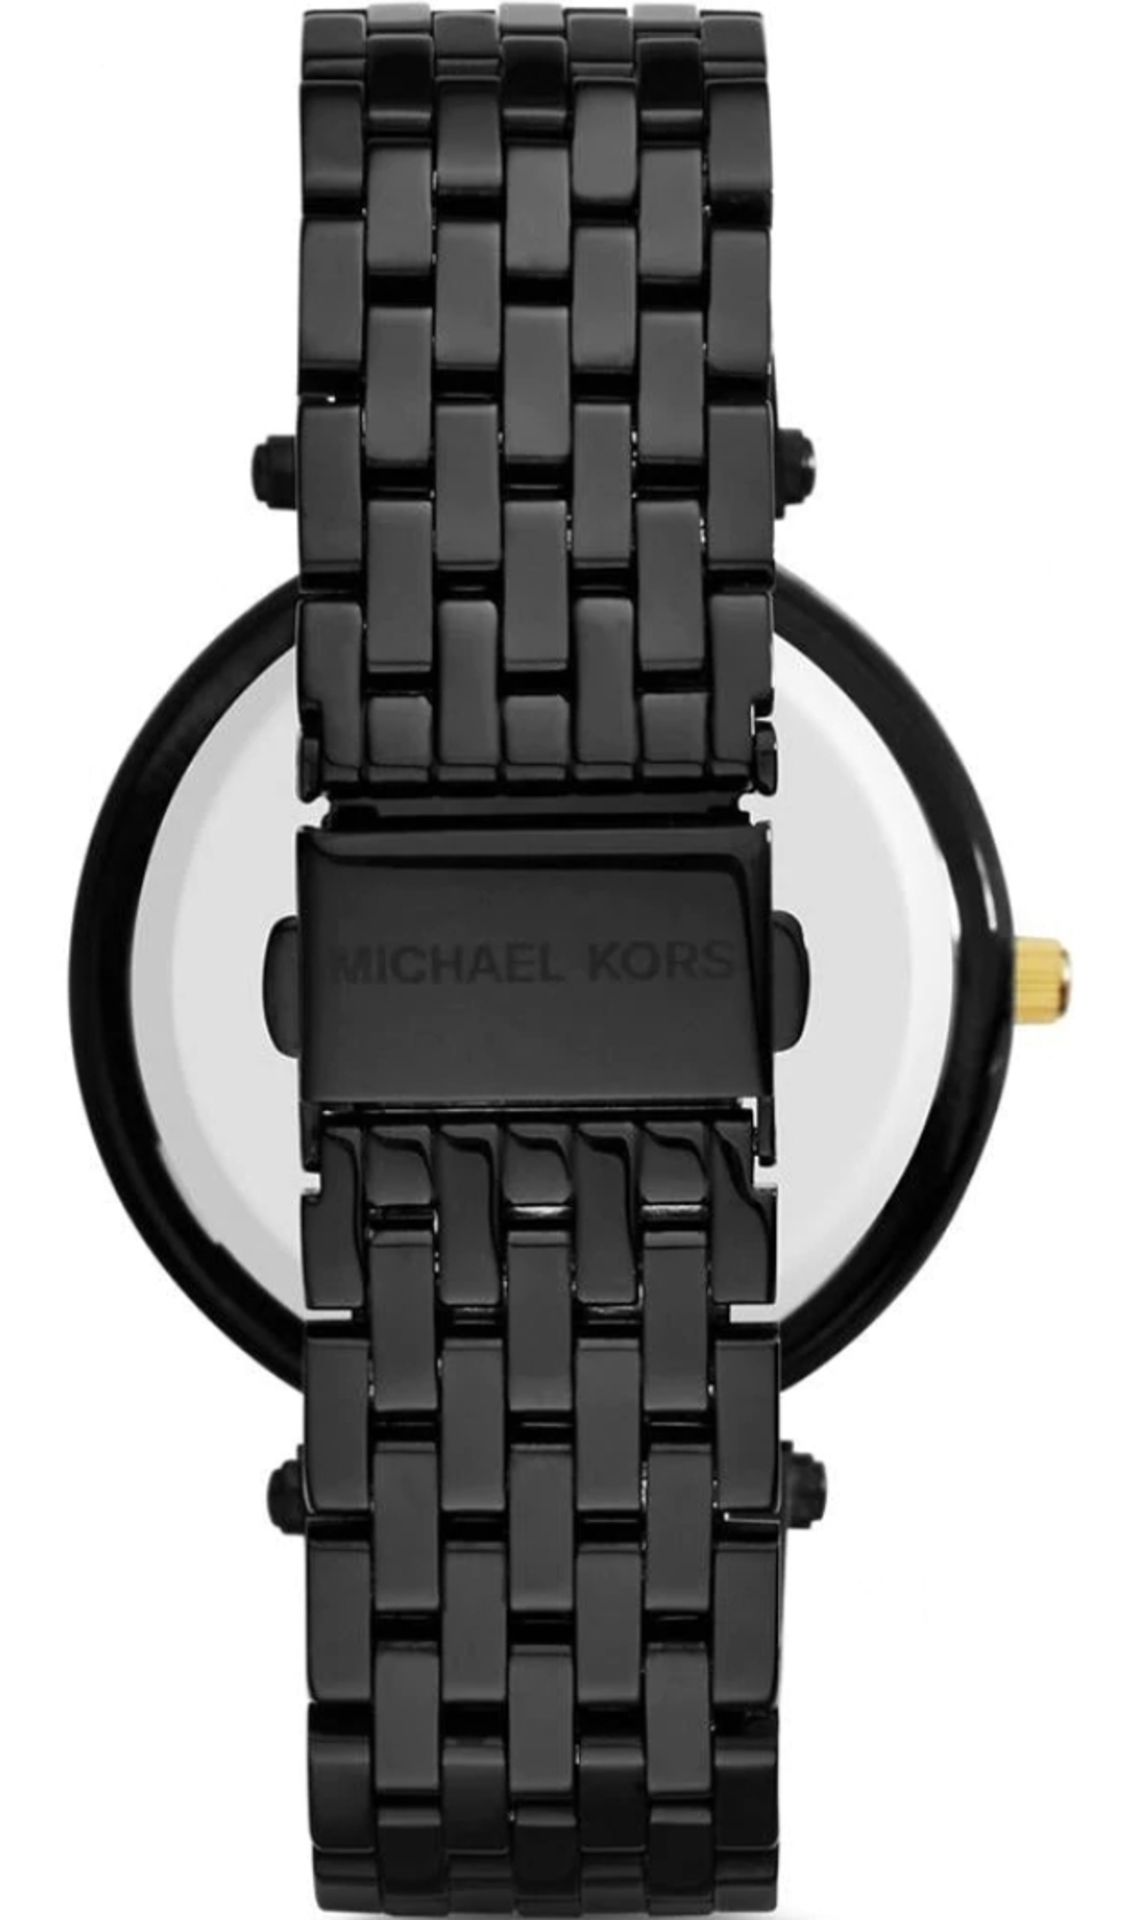 Michael Kors MK3322 Darci Gold & Black Stainless Steel Ladies Watch - Image 4 of 8